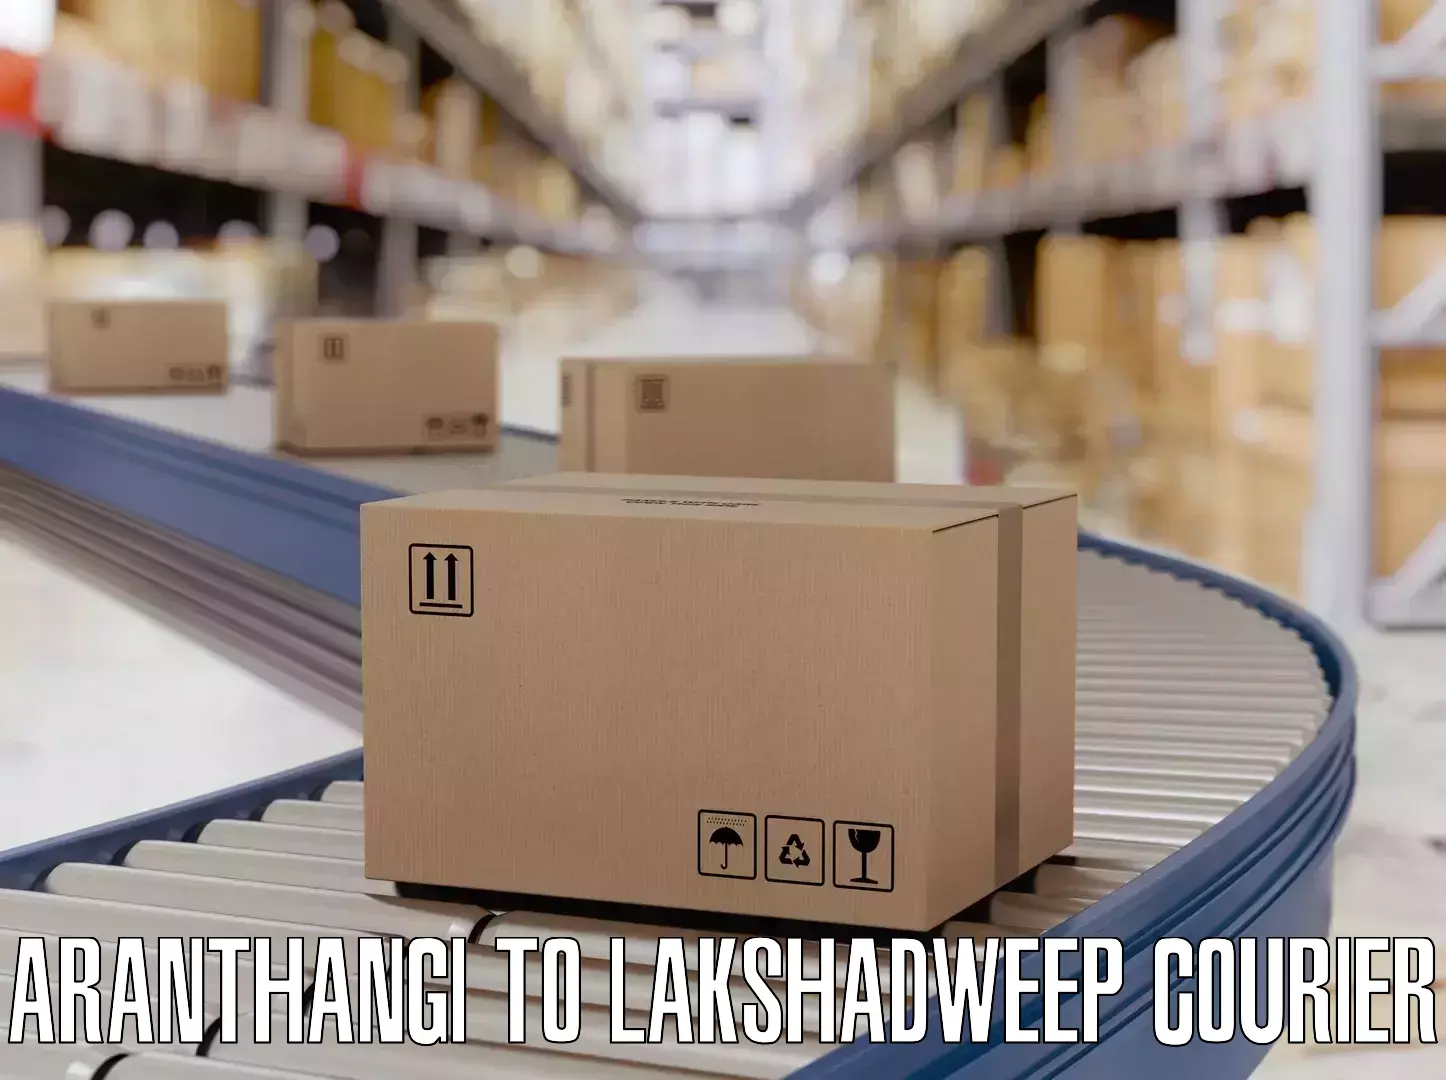 Luggage delivery optimization Aranthangi to Lakshadweep